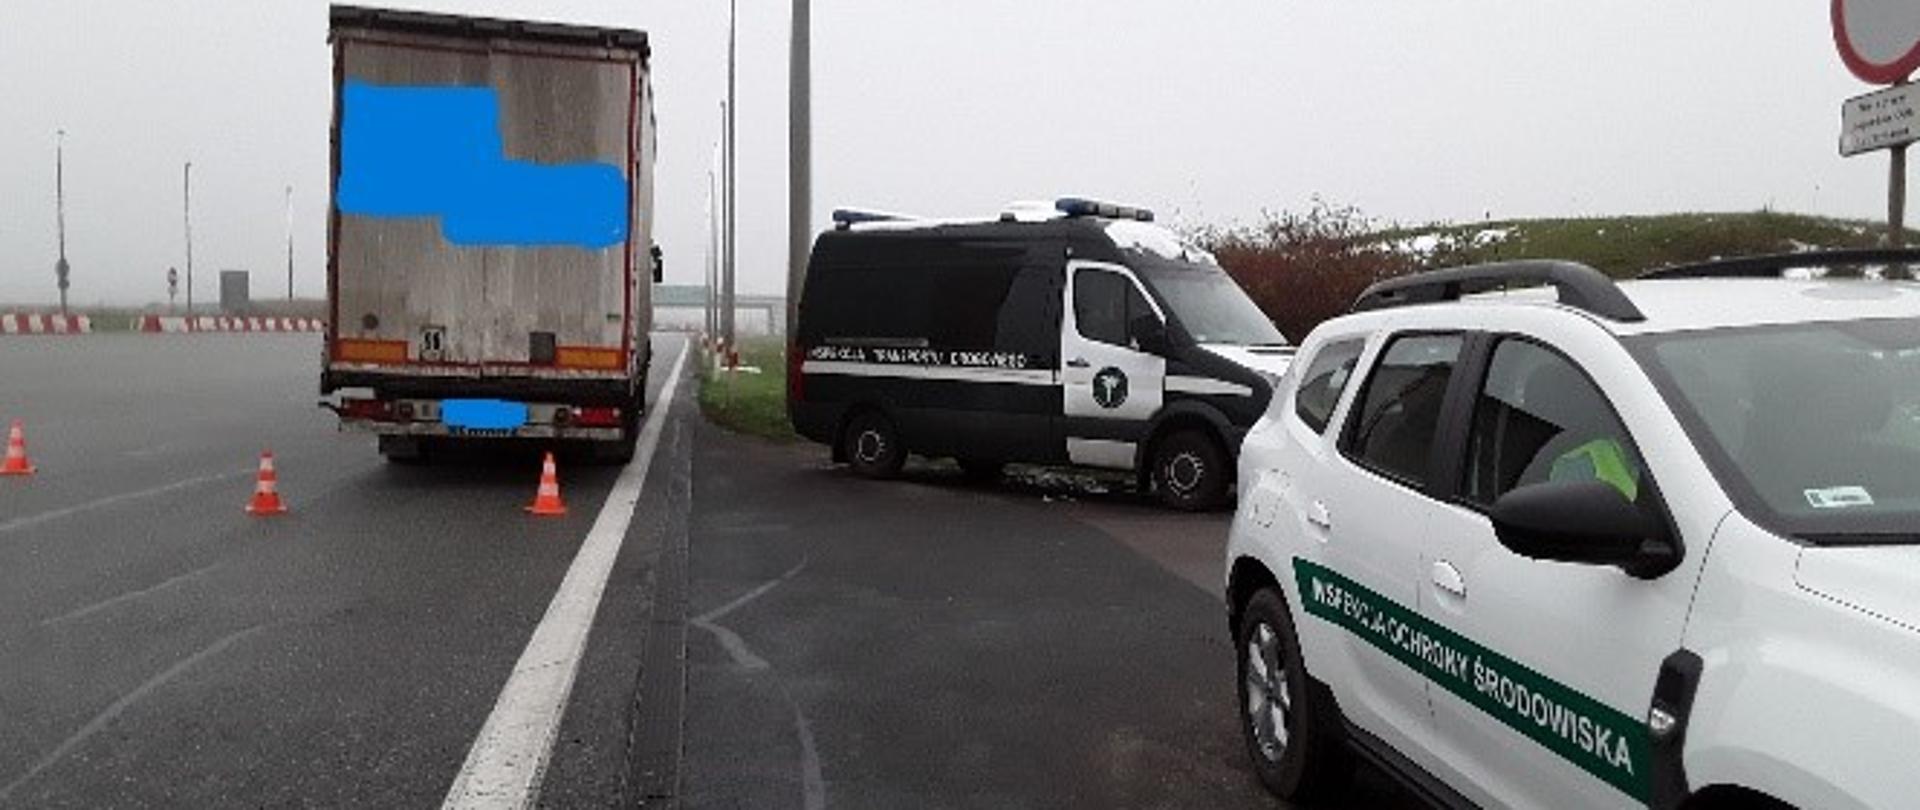 Zatrzymany pojazd ciężarowy w ramach wspólnej akcji kontrolnej inspektorów WIOŚ w Gdańsku i WITD w Gdańsku.